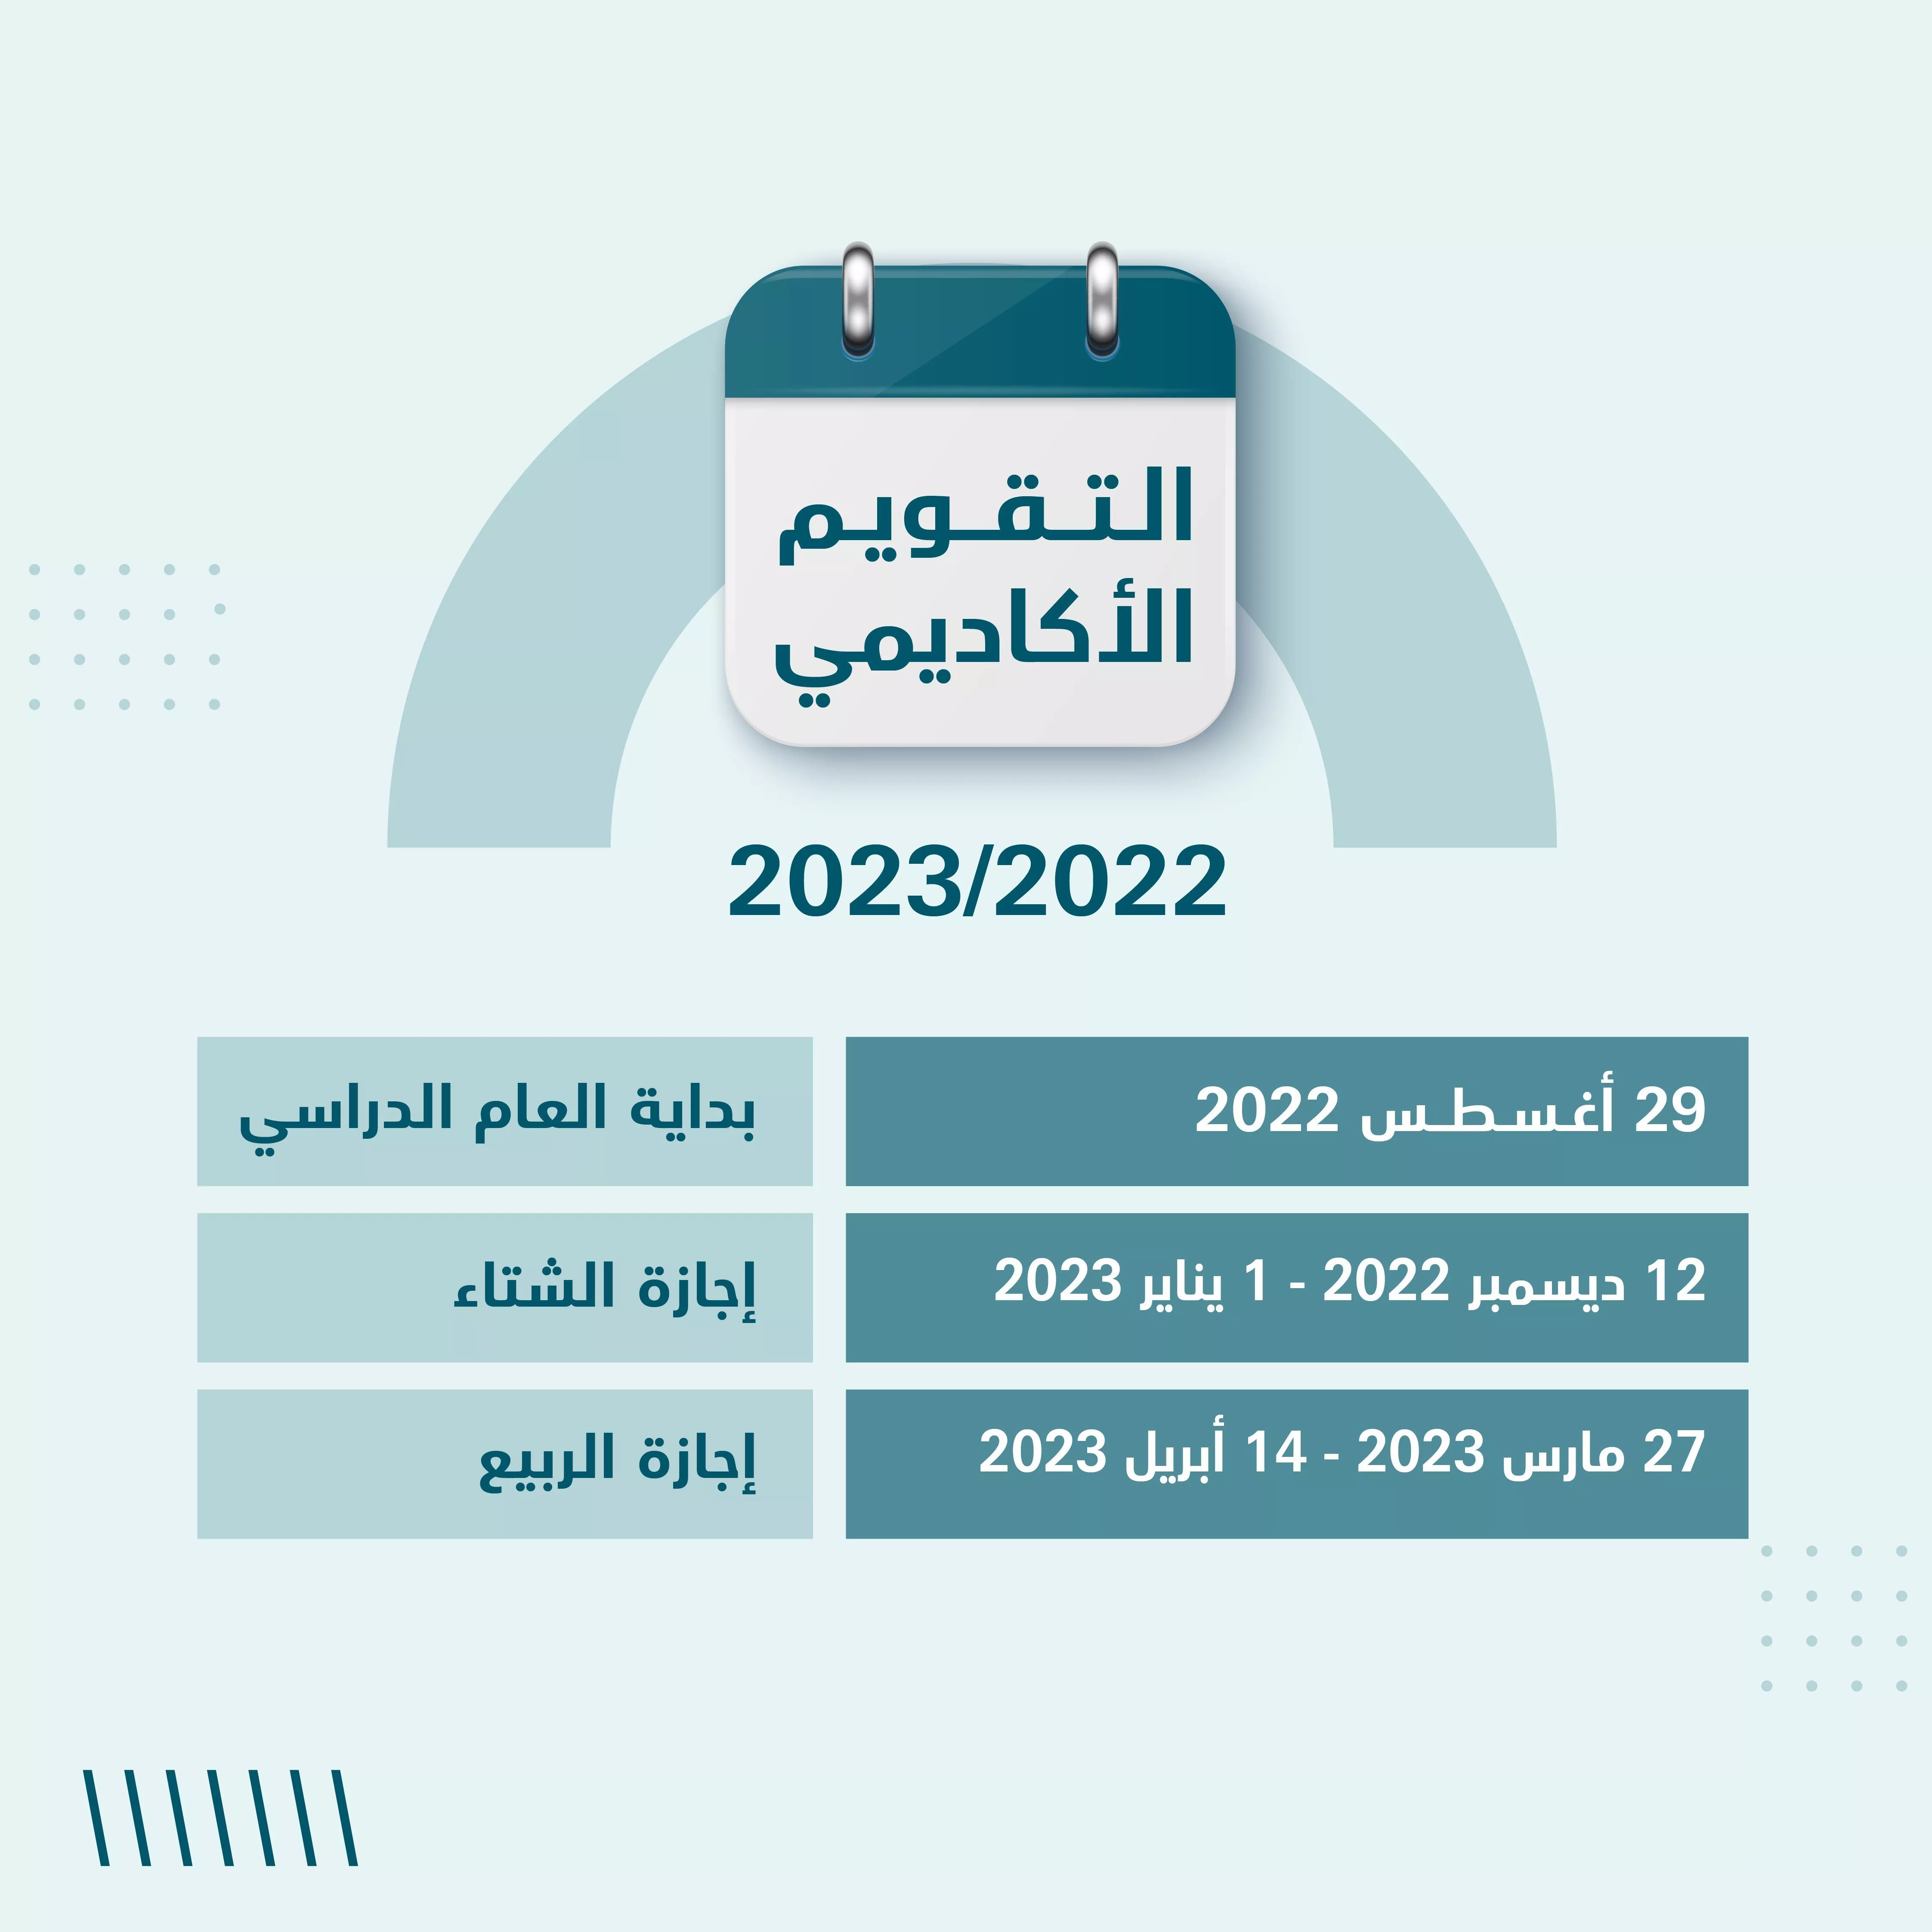 هذا هو جدول الاجازات المدرسية في الامارات للعام الدراسي 2022 - 2023